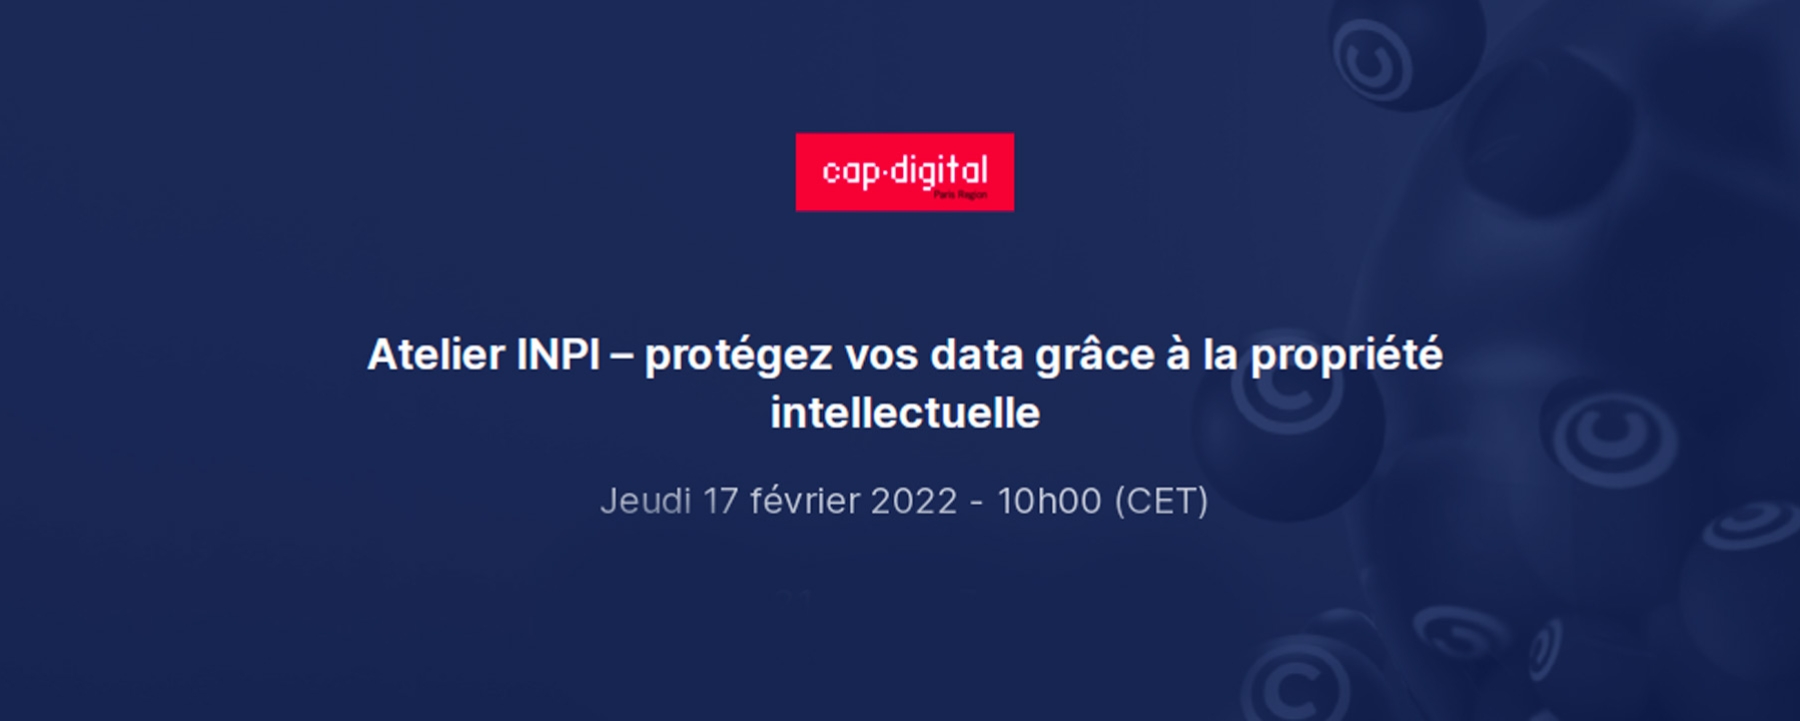 Atelier INPI – protégez vos data grâce à la propriété intellectuelle